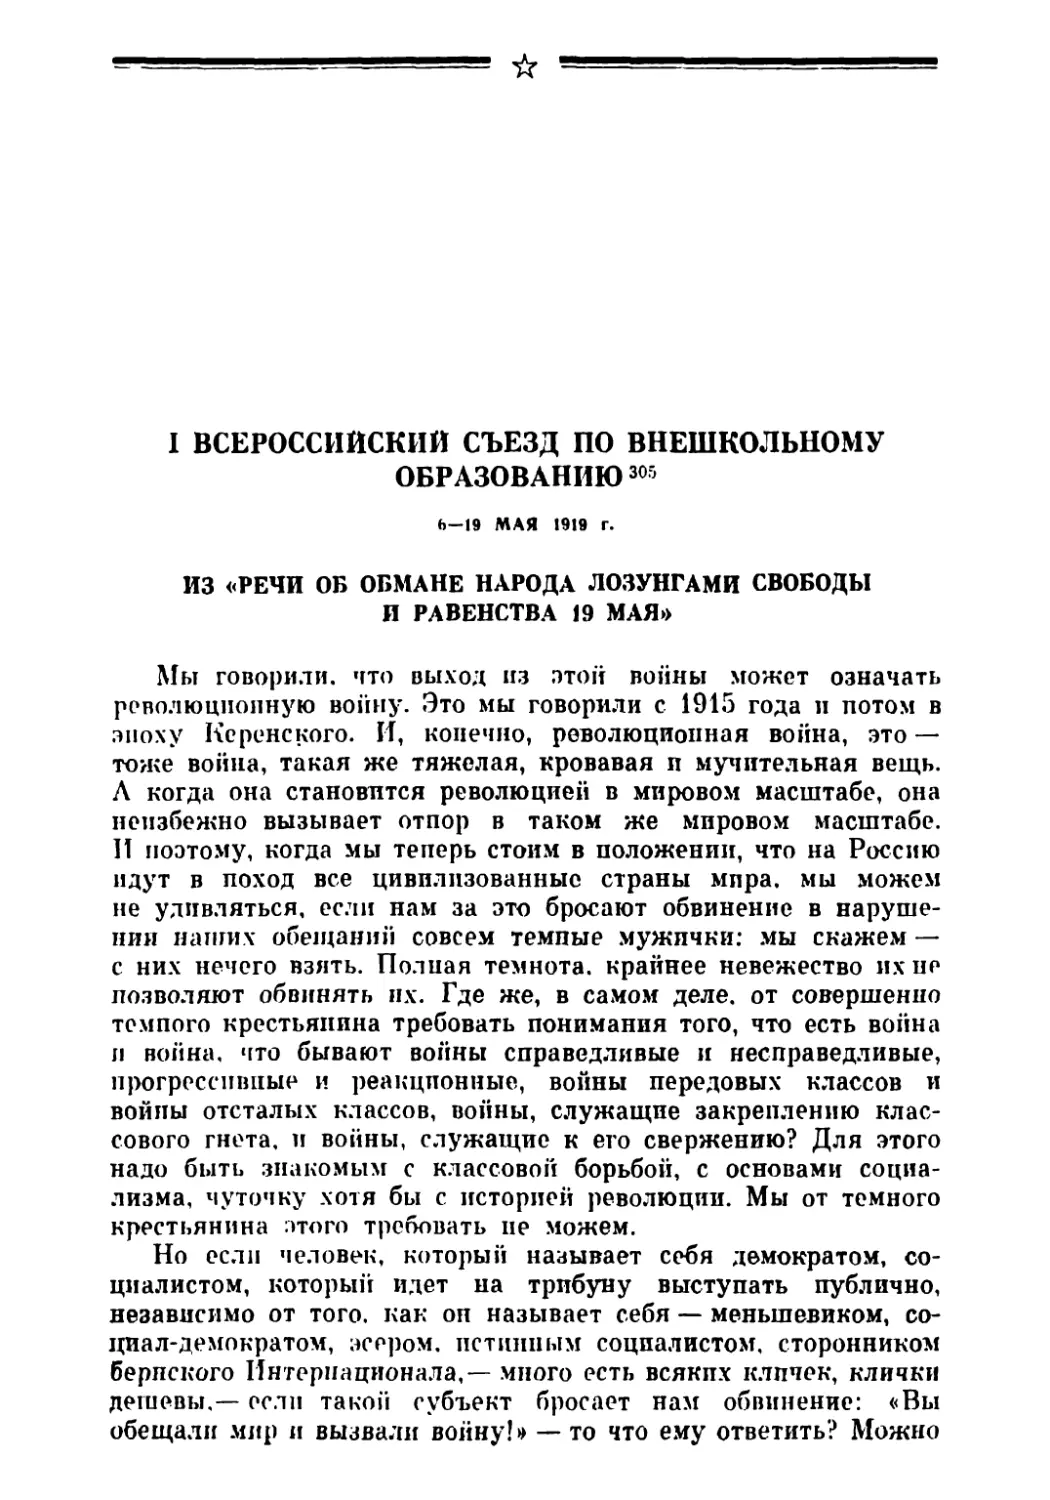 I Всероссийский съезд по внешкольному образованию 6—19 мая 1919 г.